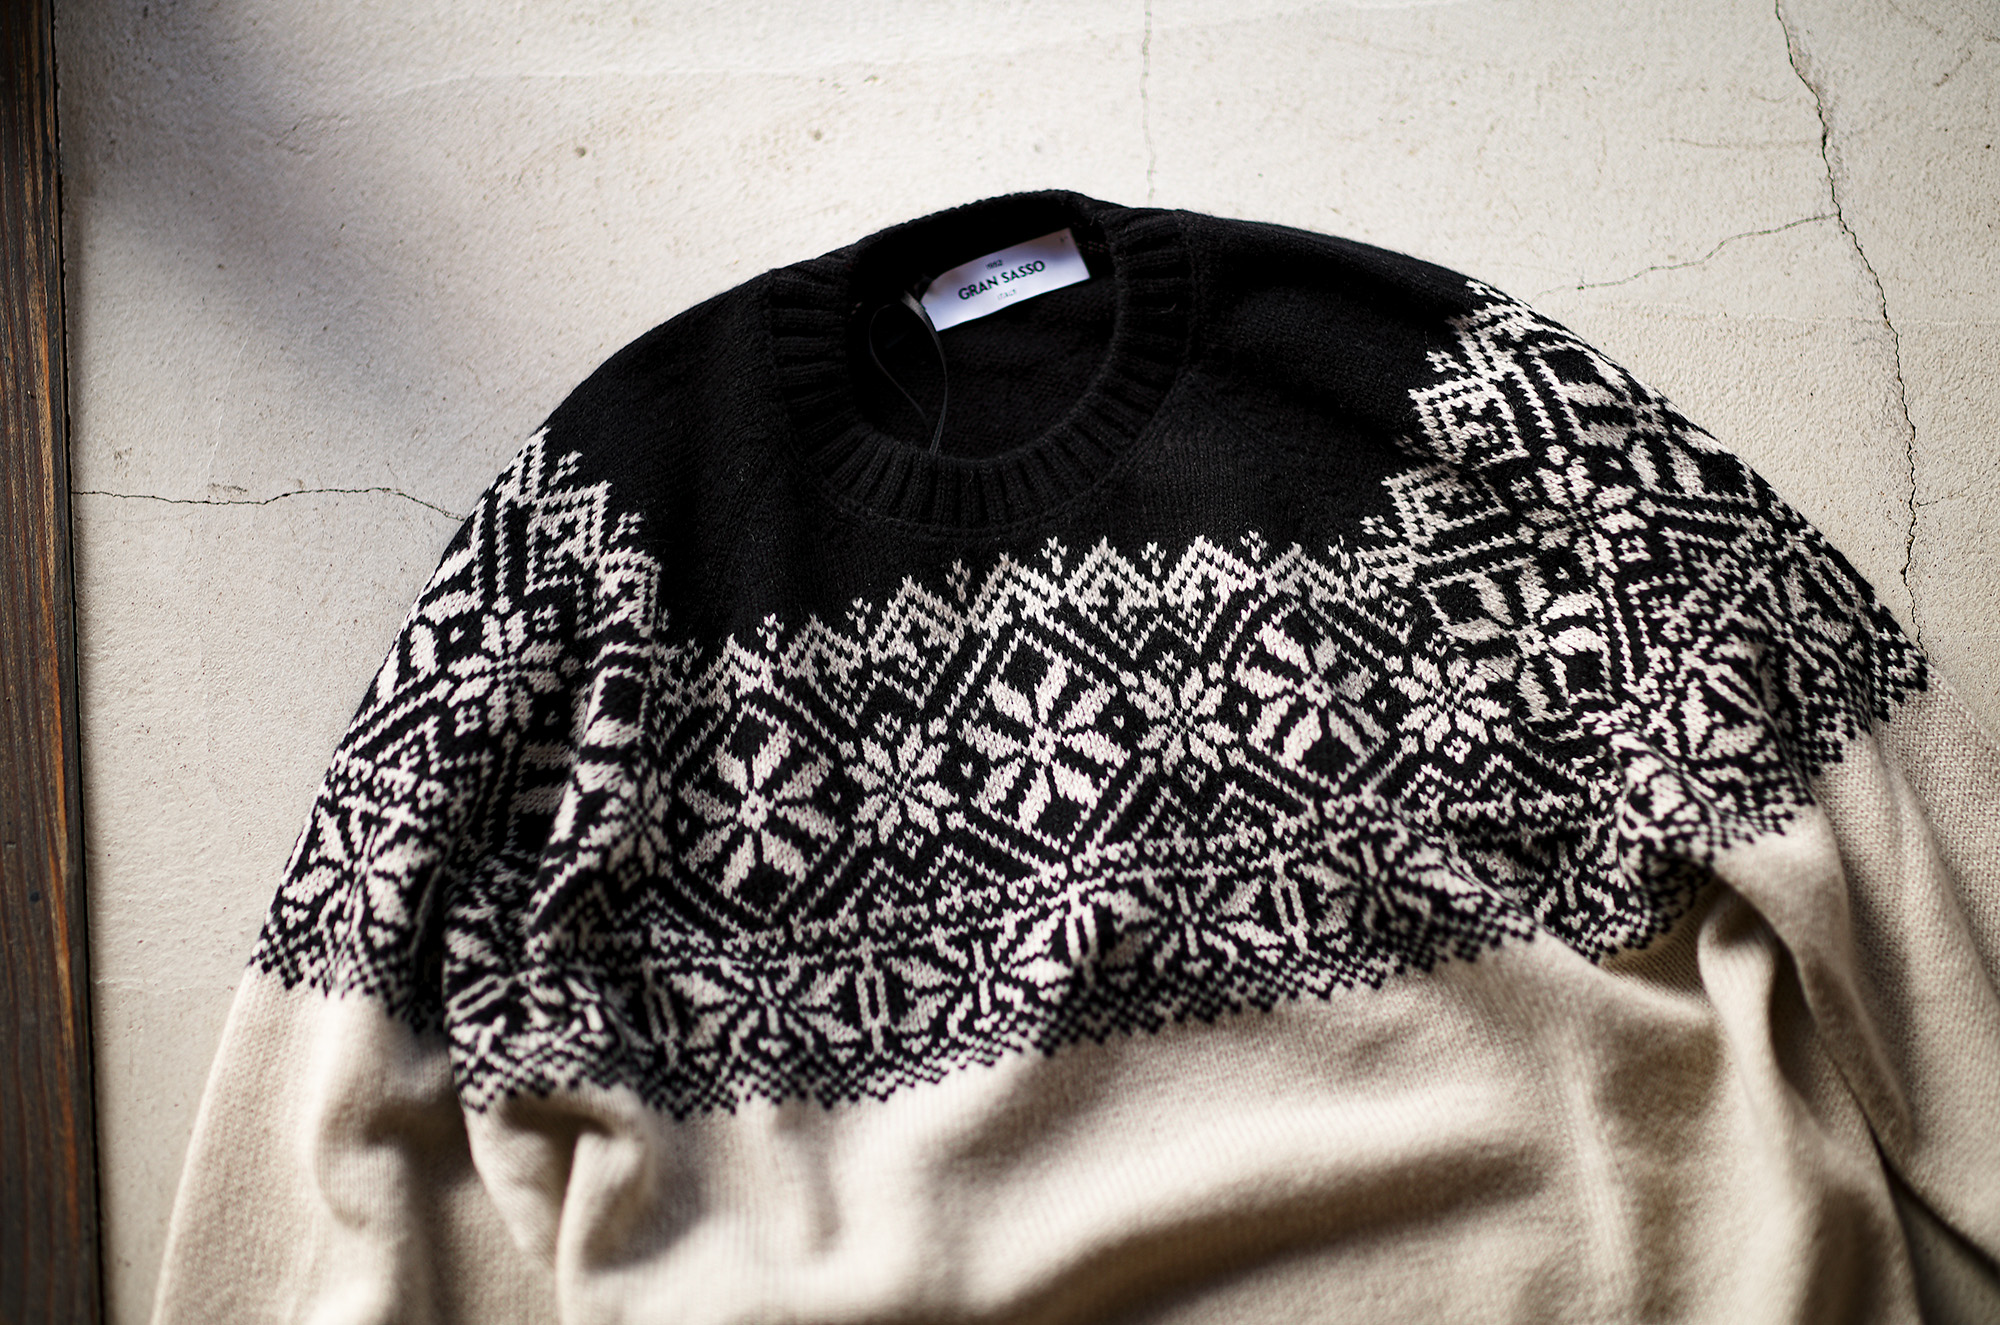 Gran Sasso (グランサッソ) Nordic Wool Sweater (ノルディック ウール セーター) ノルディック柄 8ゲージ クルーネックセーター BLACK × WHITE (ブラック×ホワイト・009) made in italy (イタリア製)  2023秋冬新作 【入荷しました】【フリー分発売開始】愛知 名古屋 Alto e Diritto altoediritto アルトエデリット